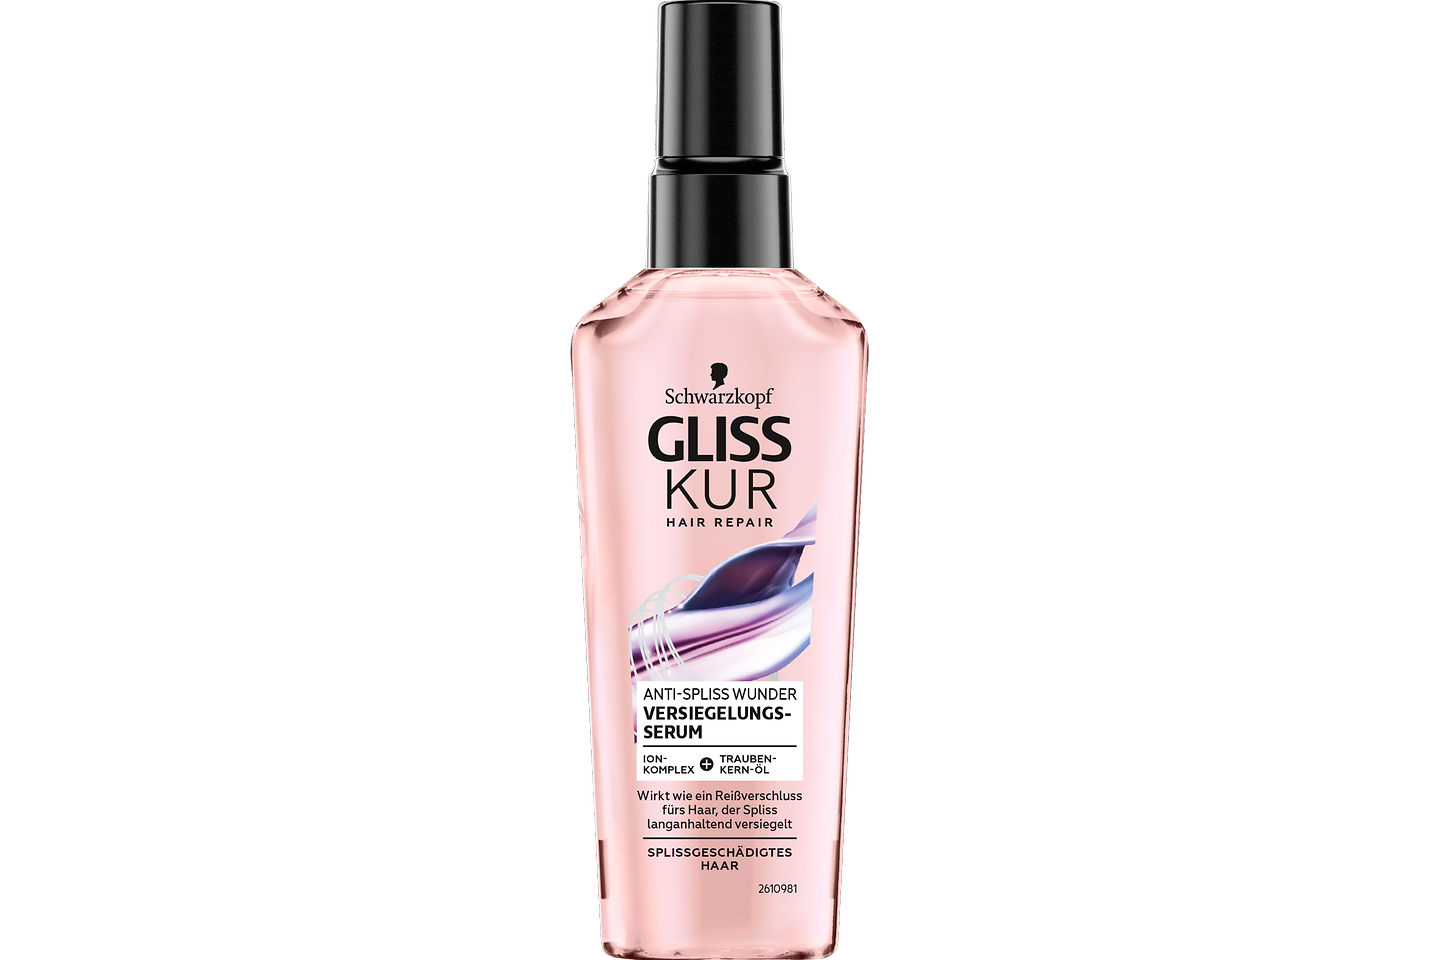 Gliss Kur Split Hair Miracle Sealing Serum